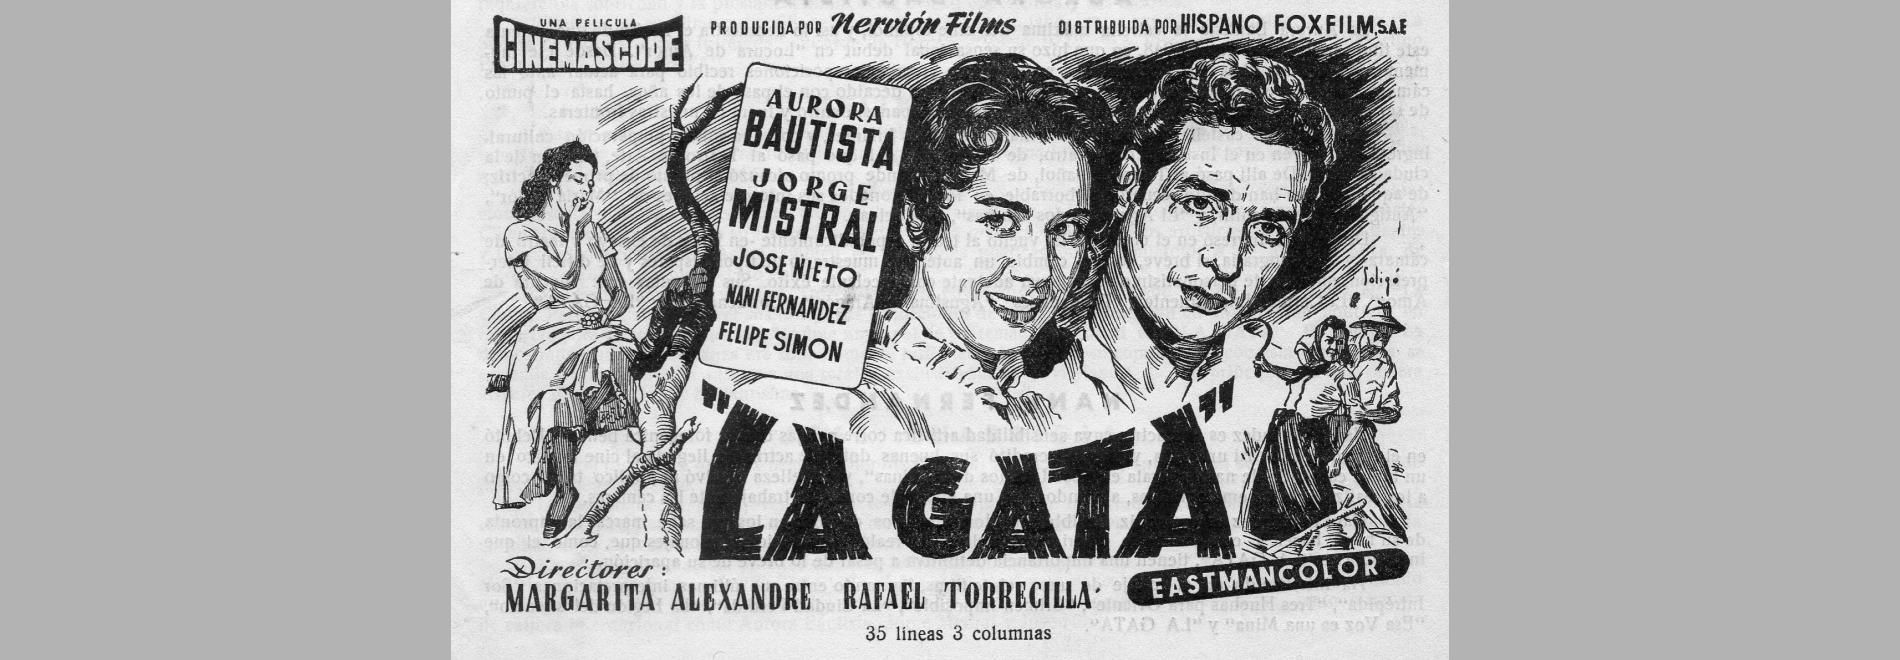 La gata (Margarita Alexandre, Rafael María Torrecilla, 1956)